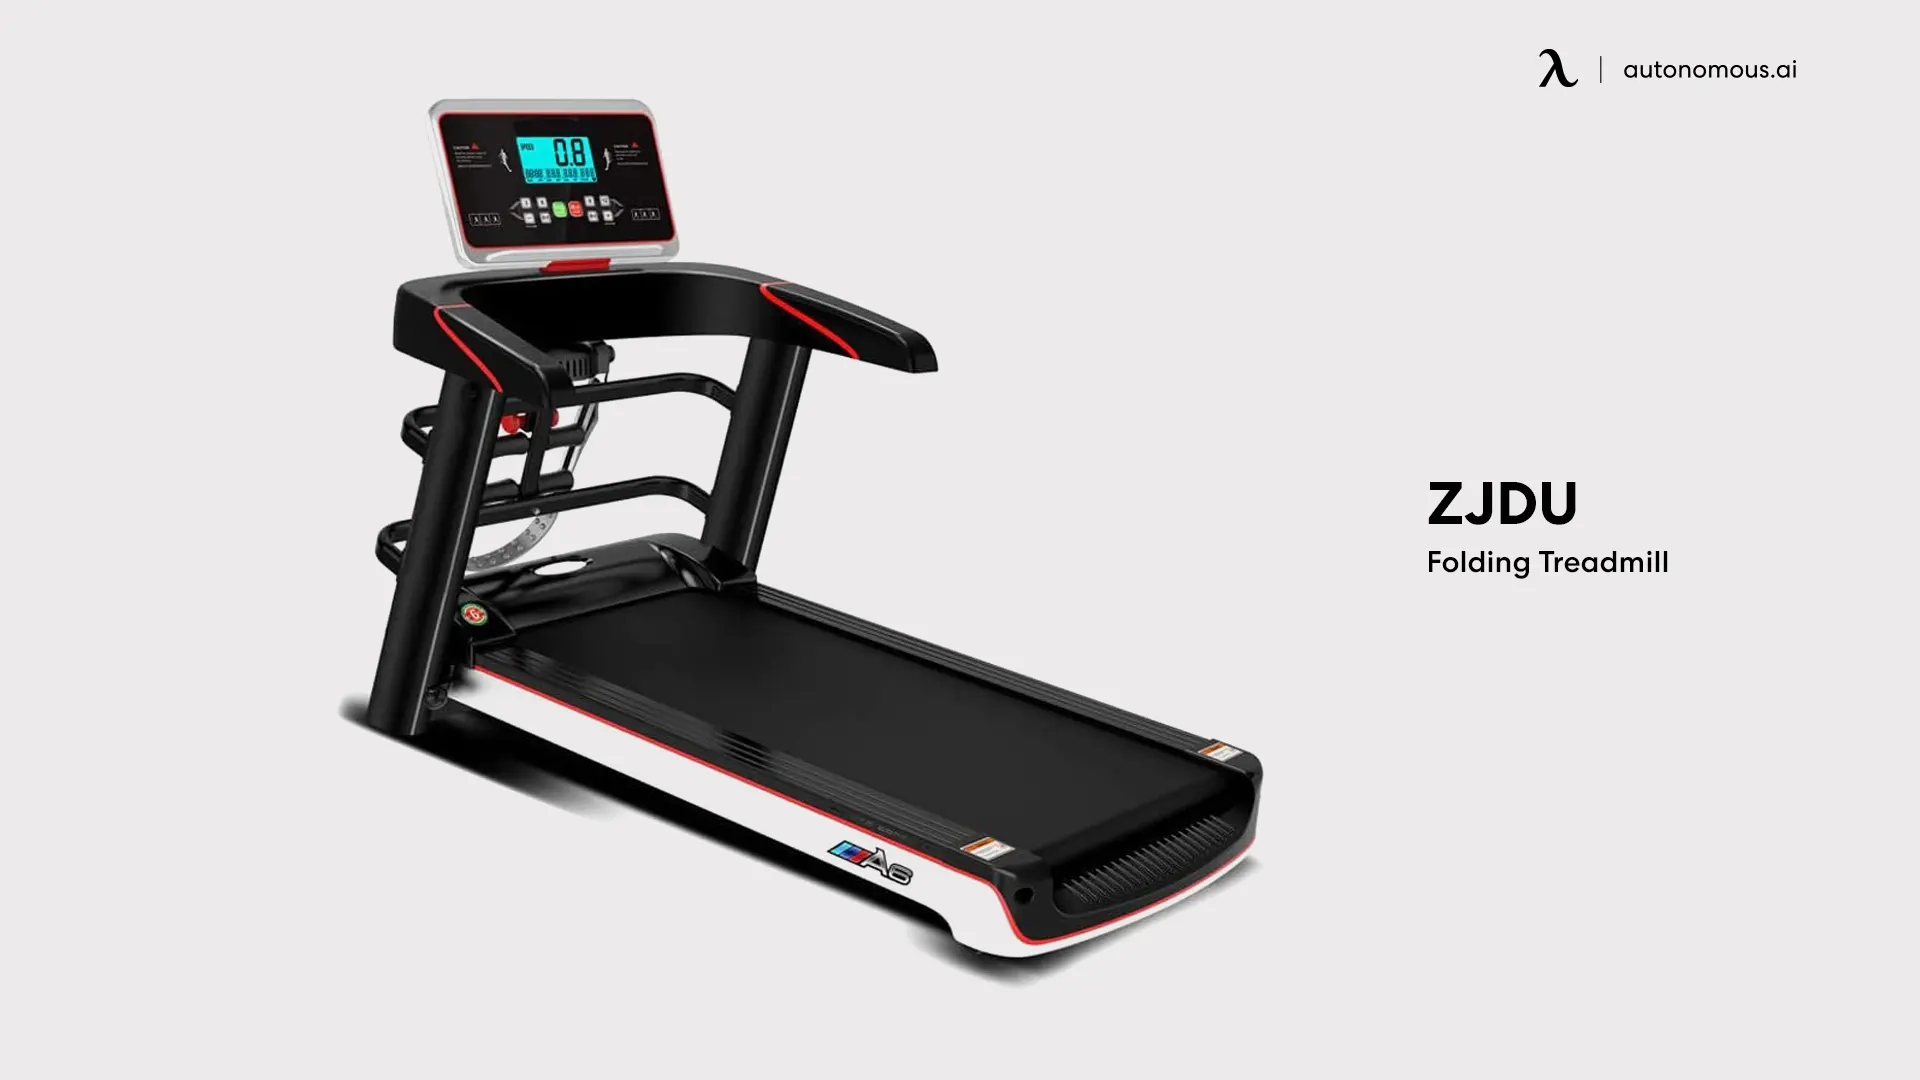 ZJDU Folding Treadmill - best foldable treadmill